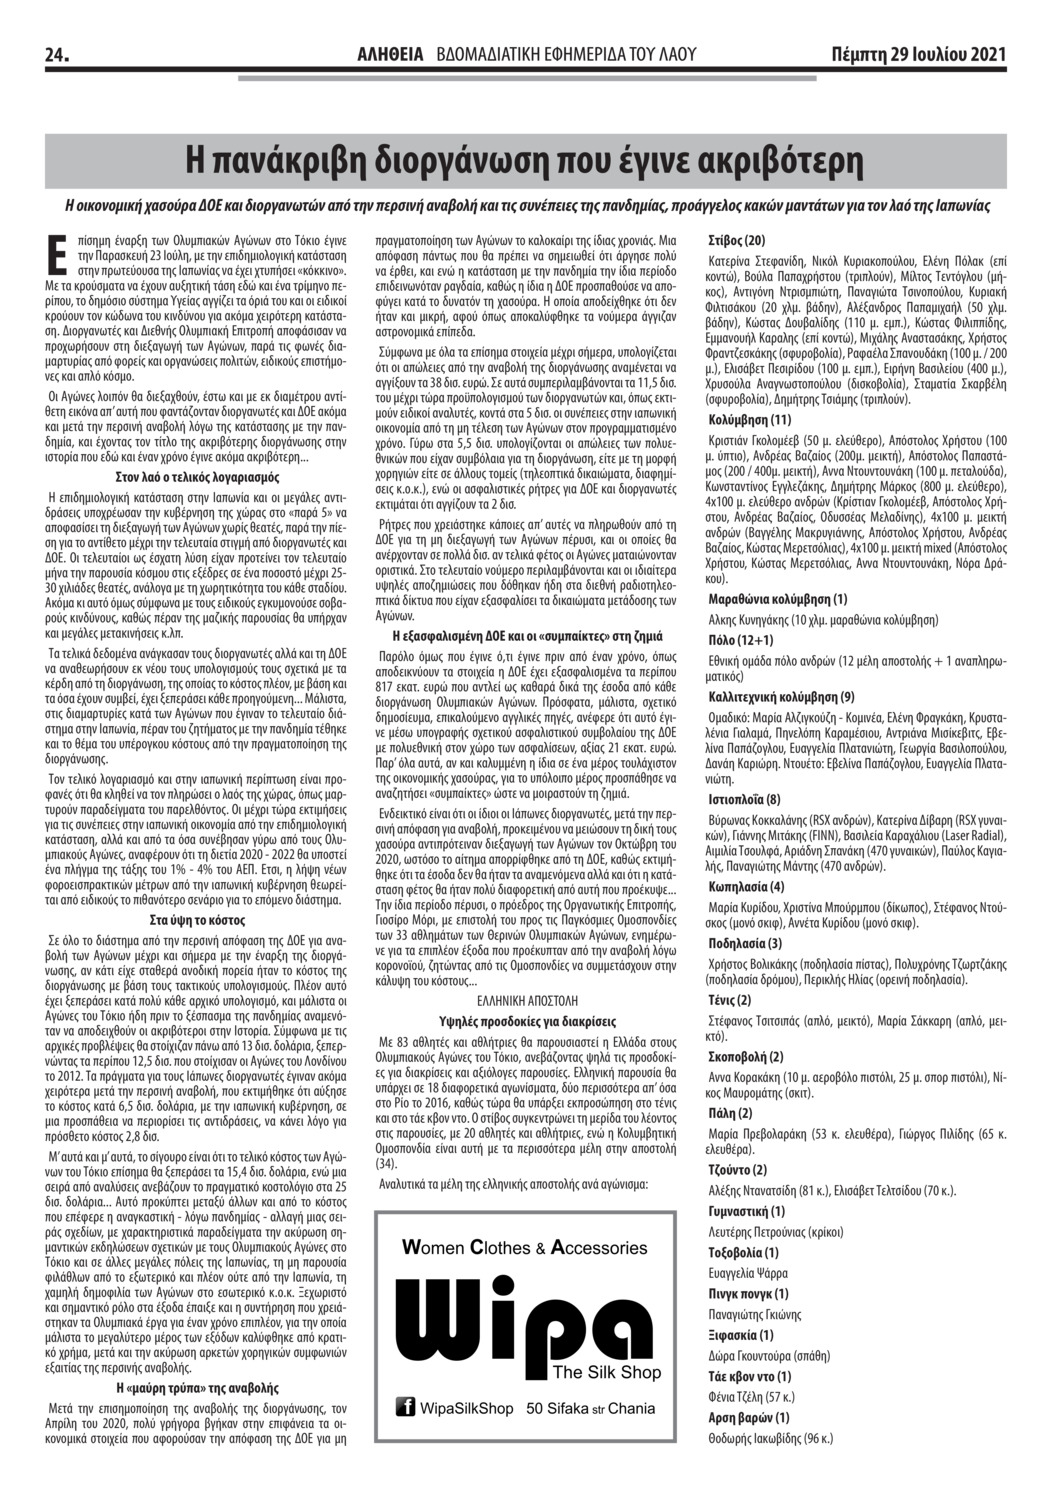 Οπισθόφυλλο εφημερίδας Ελευθερία Ηπείρου